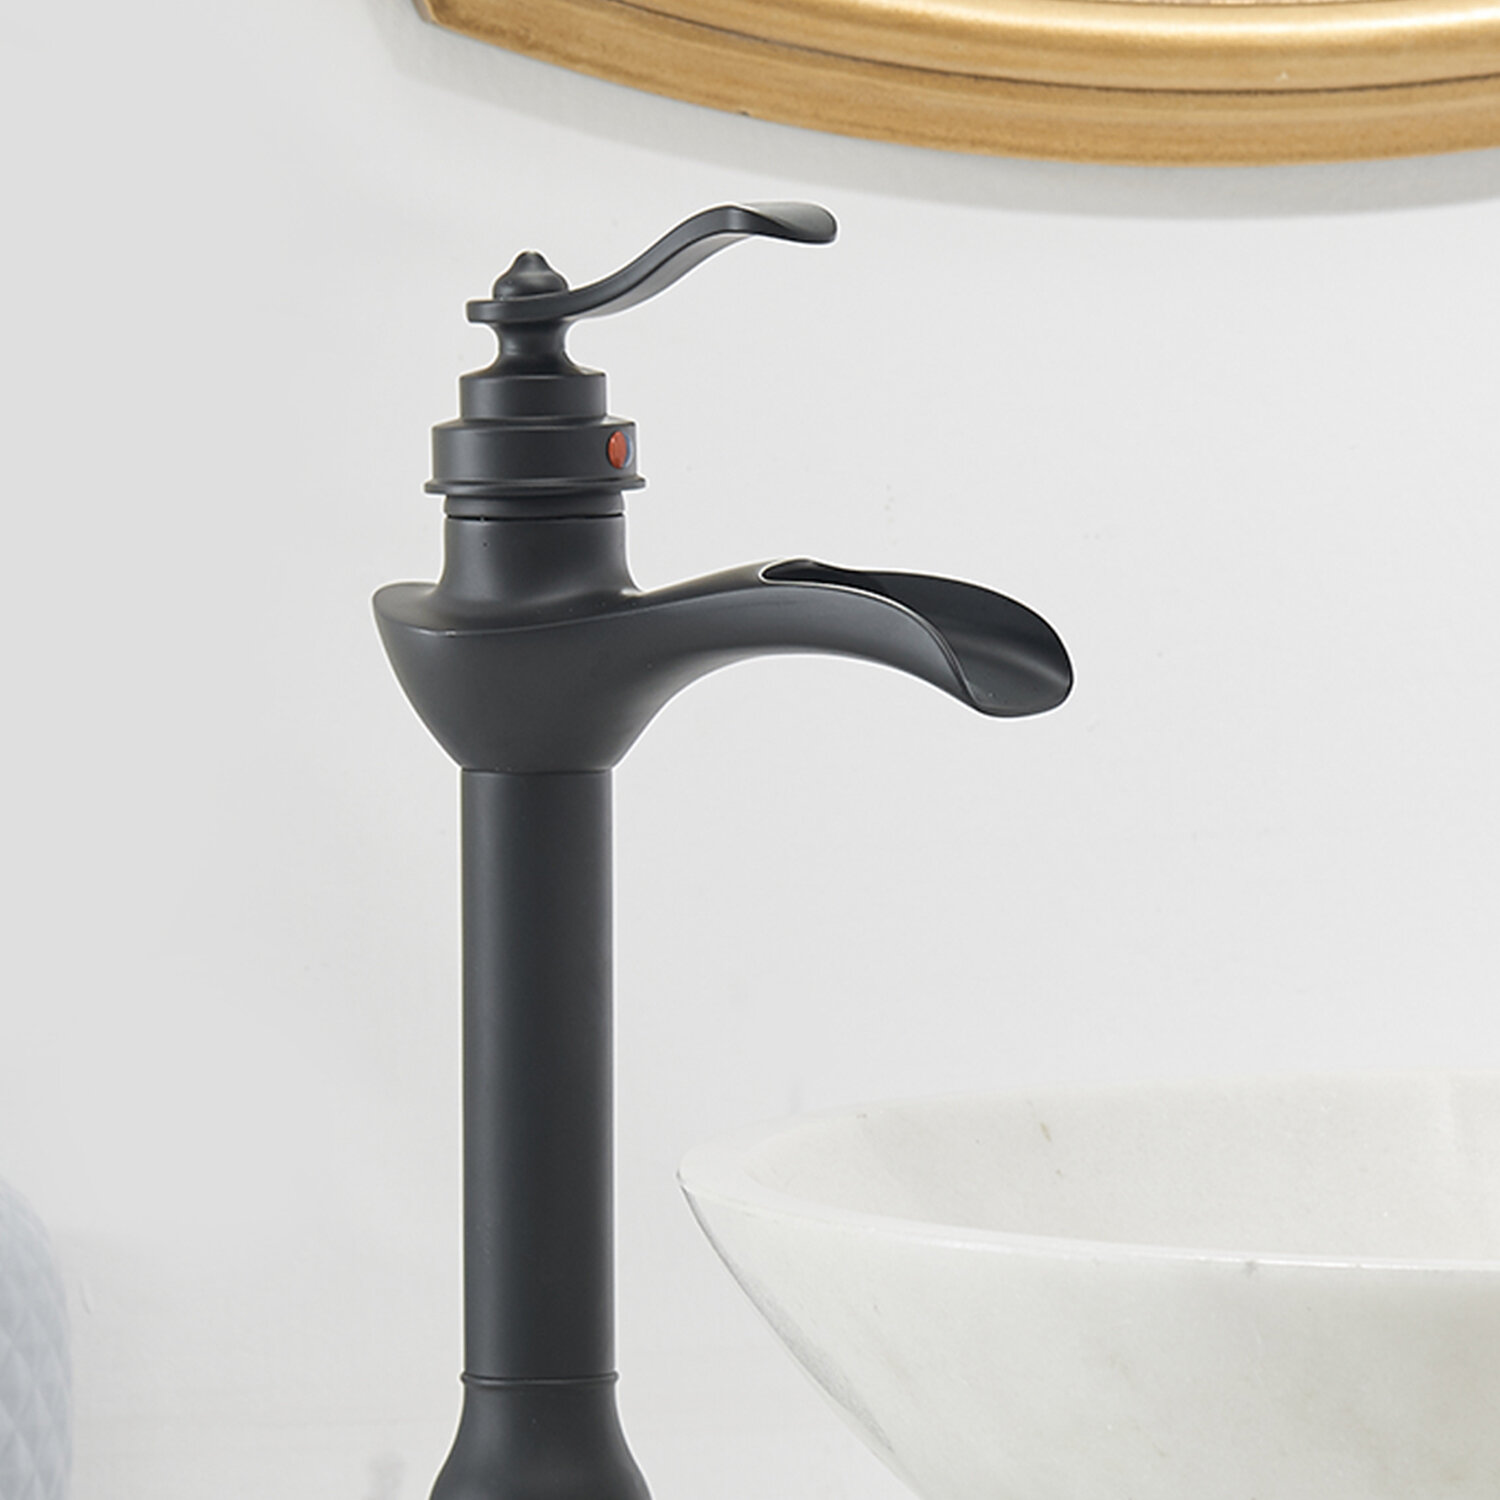 Bundle - 3 Items: Vessel Sink, Vessel Faucet and Pop-Up Drain 640 Crystal Antique Bronze Bathroom 718 Vessel Faucet Ensemble